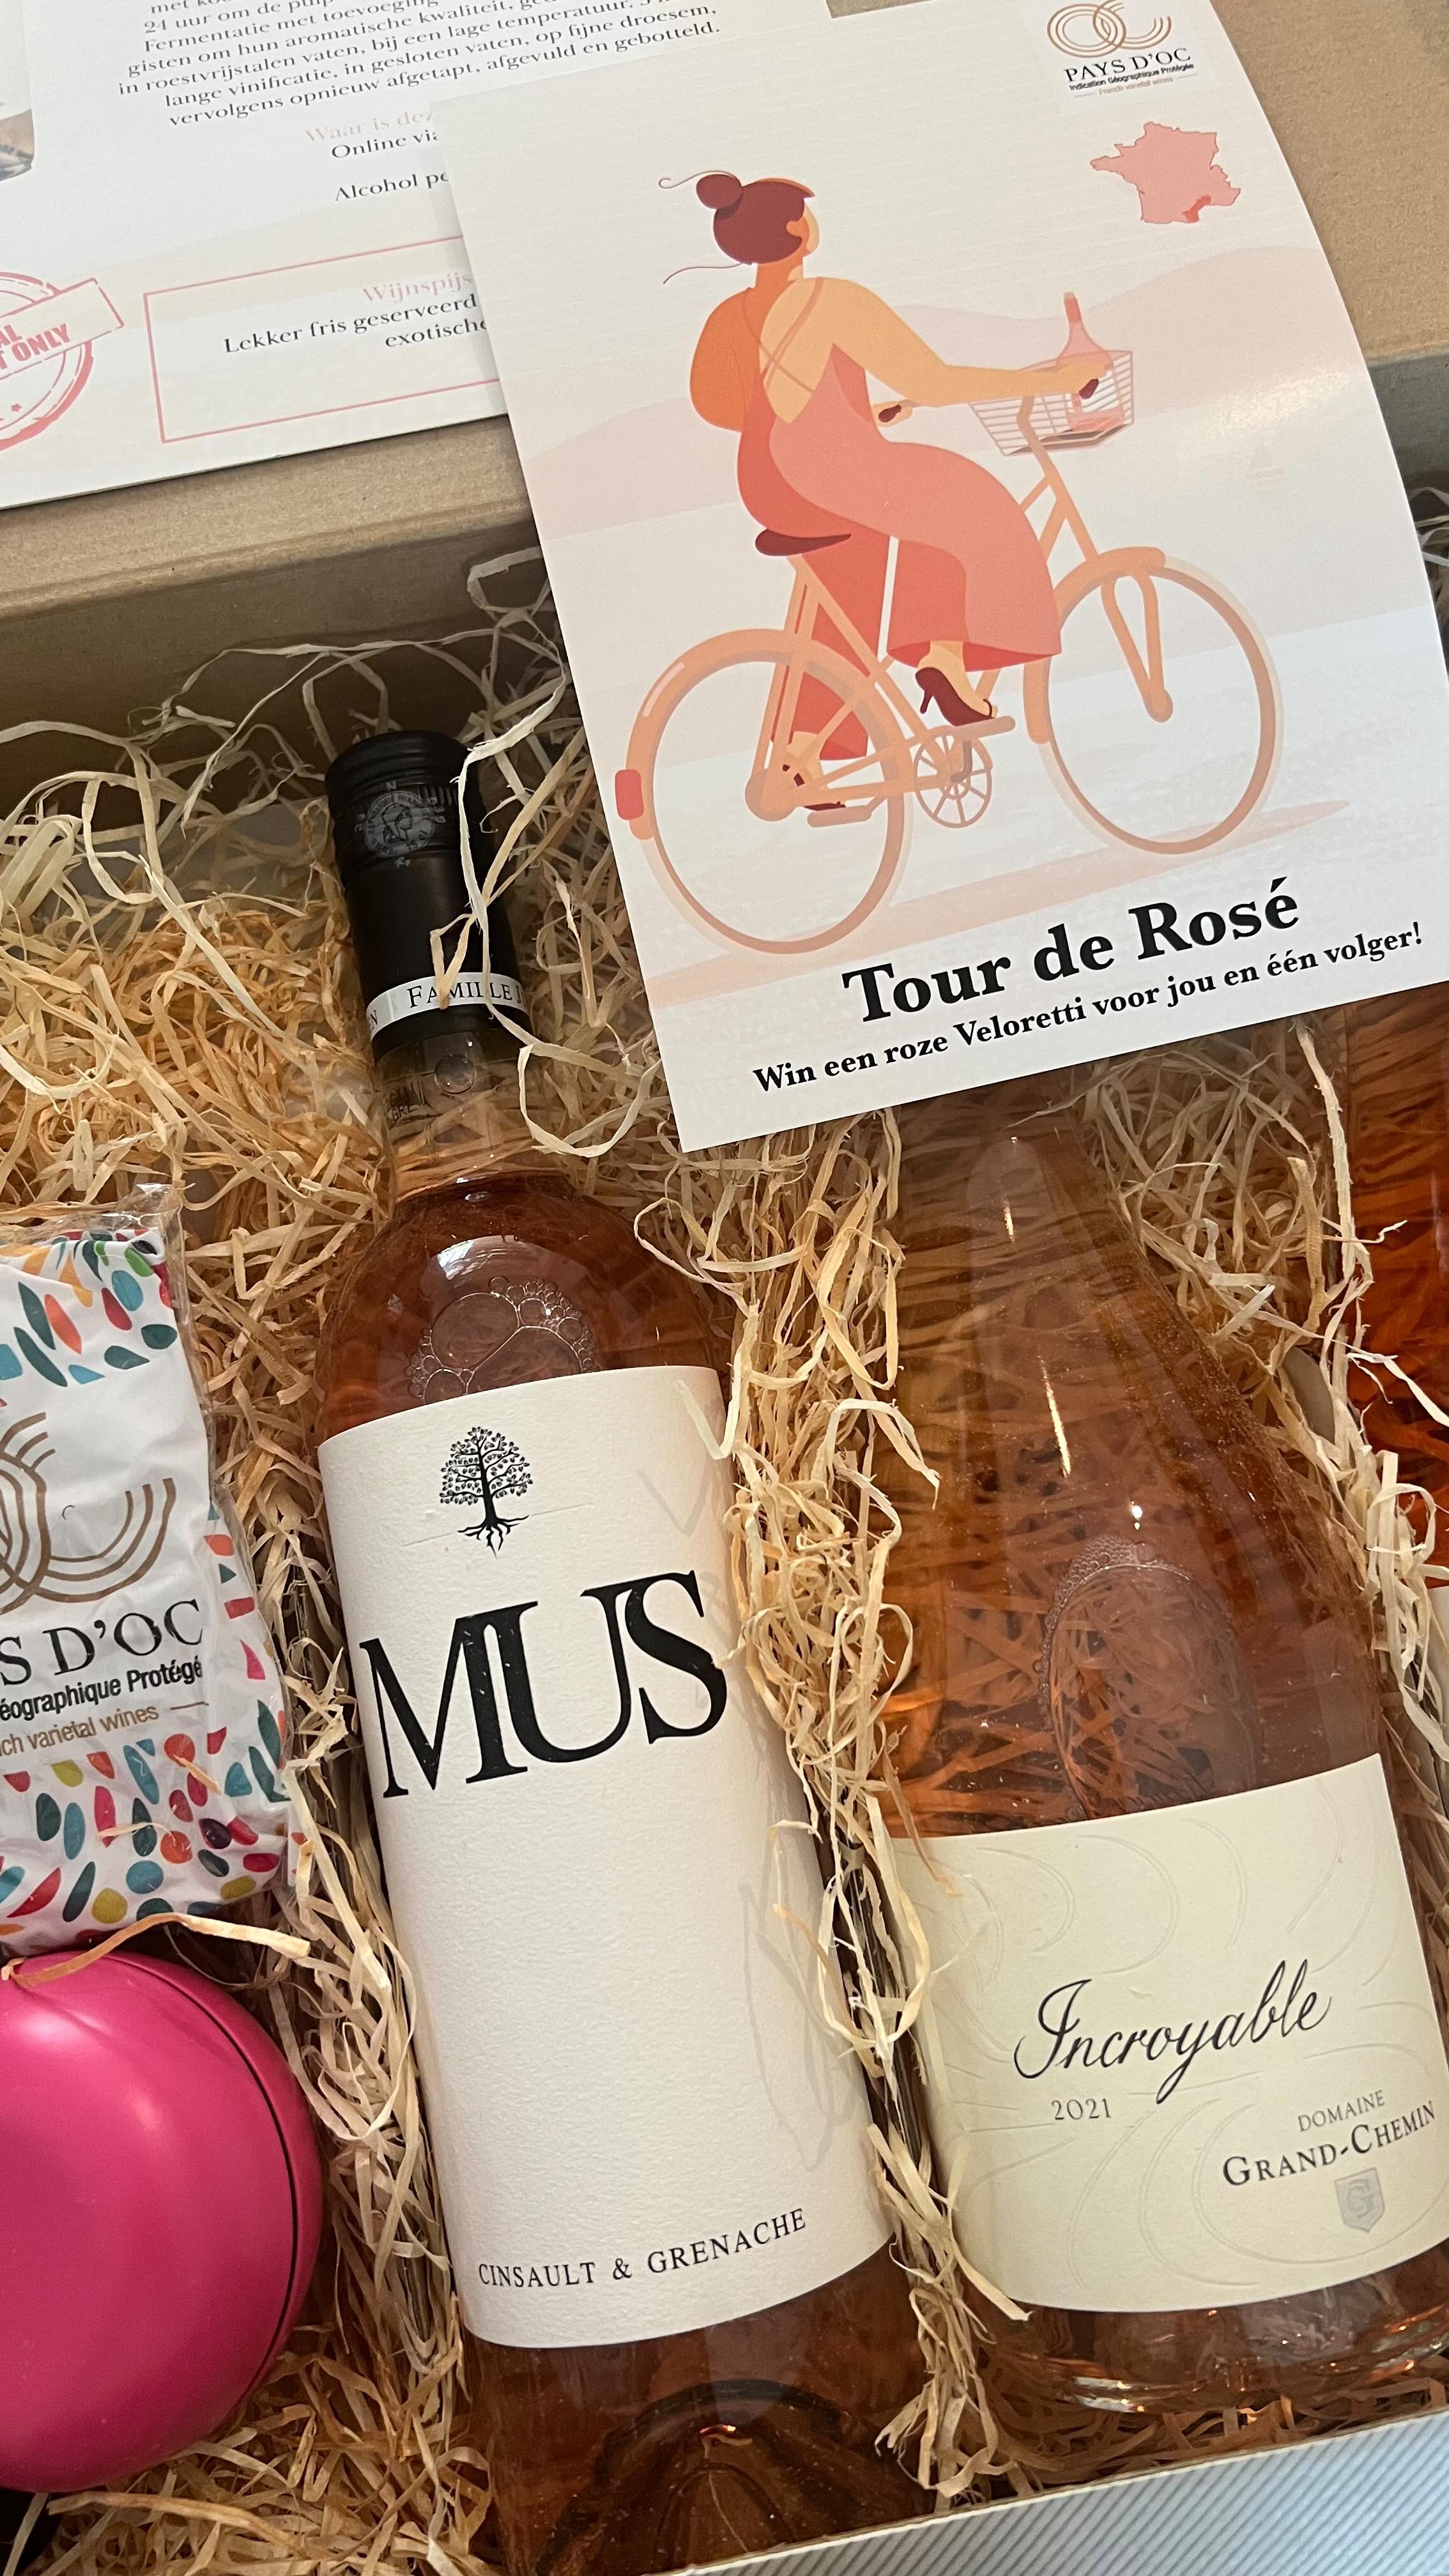 Mijn Tour de France is een TOUR DE ROSÉ! 

De laatste dagen genoten van drie Pays d’Oc rosés! Tijdens het kijken naar de Tour de France die de laatste dagen door deze Franse regio reed. 

Behalve dat we lekker rosé drinken, kan ik (plus een van mijn volgers) een fantastische roze fiets winnen van het merk Veloretti. 

Wil jij ook winnen? Let me know WHY!

@pitch.pr @paysdocigpwijnen @djfwines @domainegrandchemin #tourderosé #rosé #frankrijk #languedocroussillon @veloretti